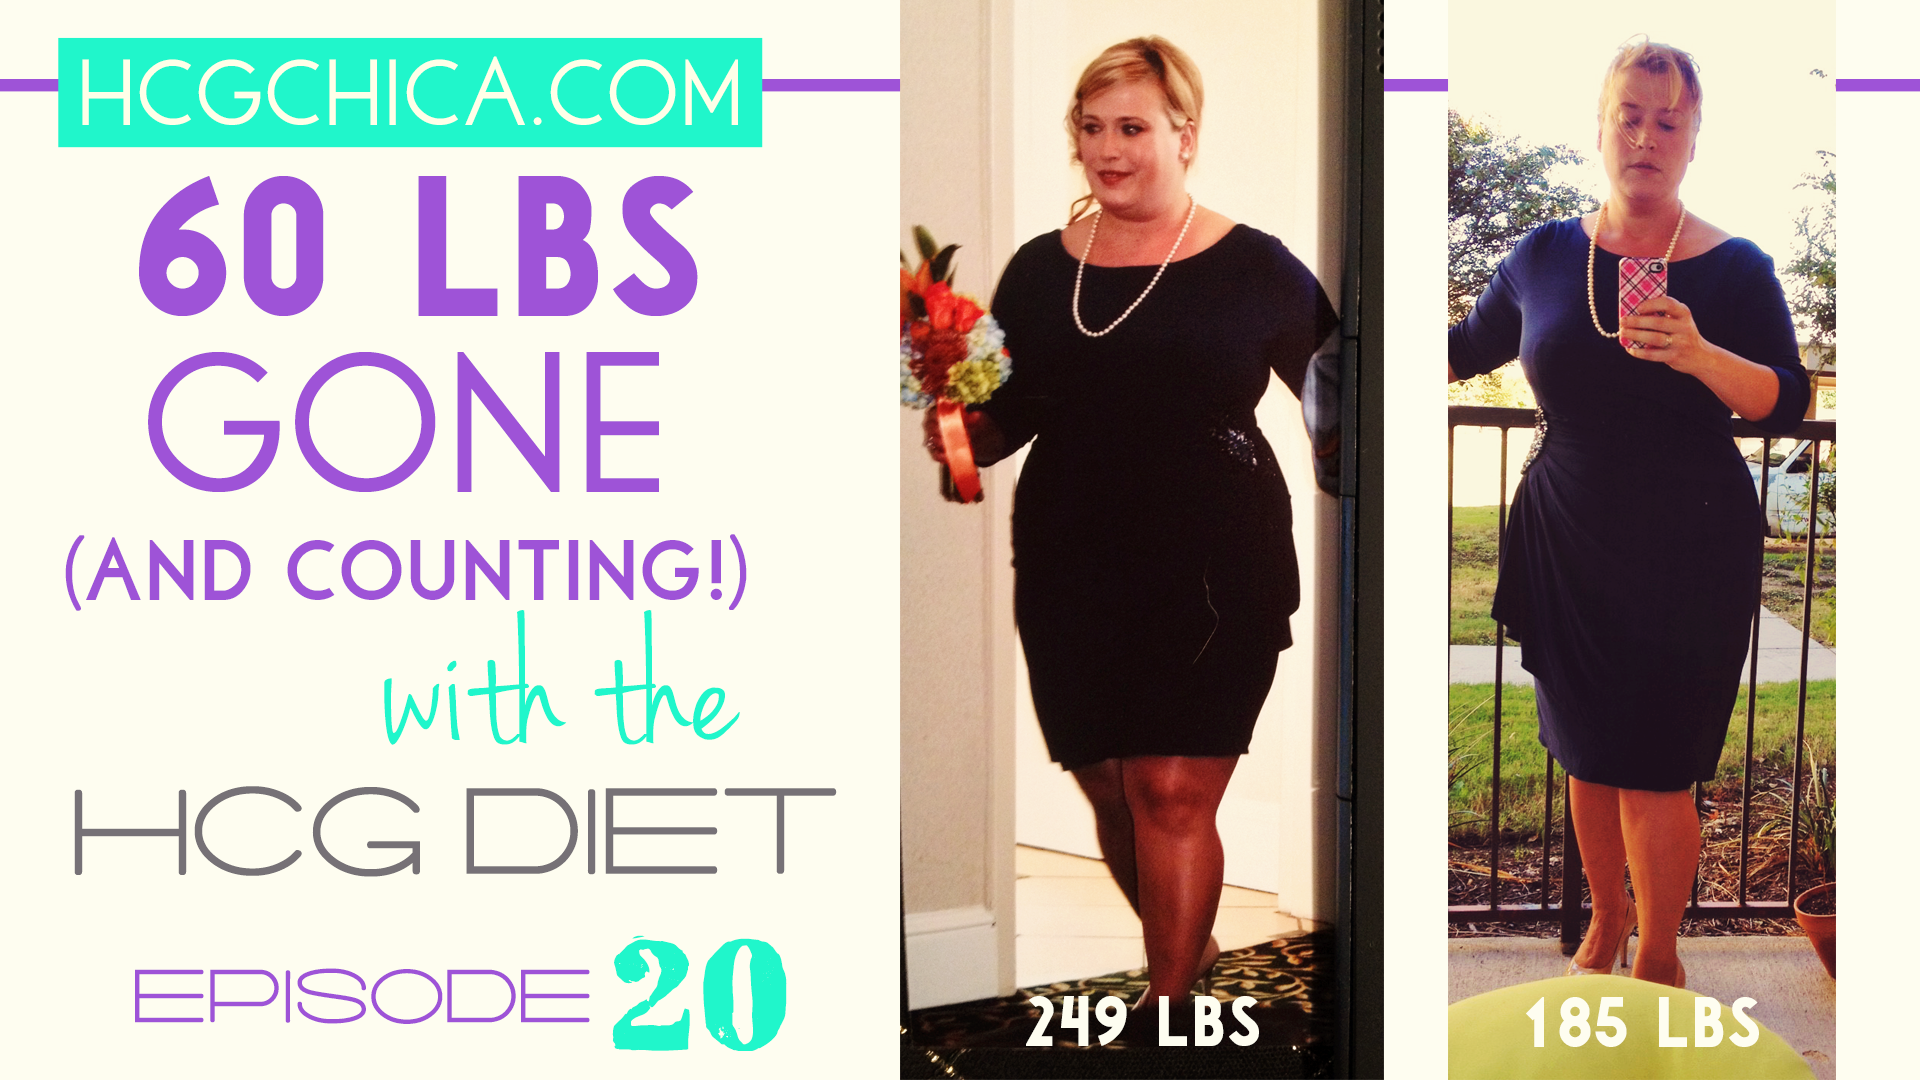 HCG Diet Interviews - Episode 20 - 60 lbs Lost in 12 weeks - hcgchica.com